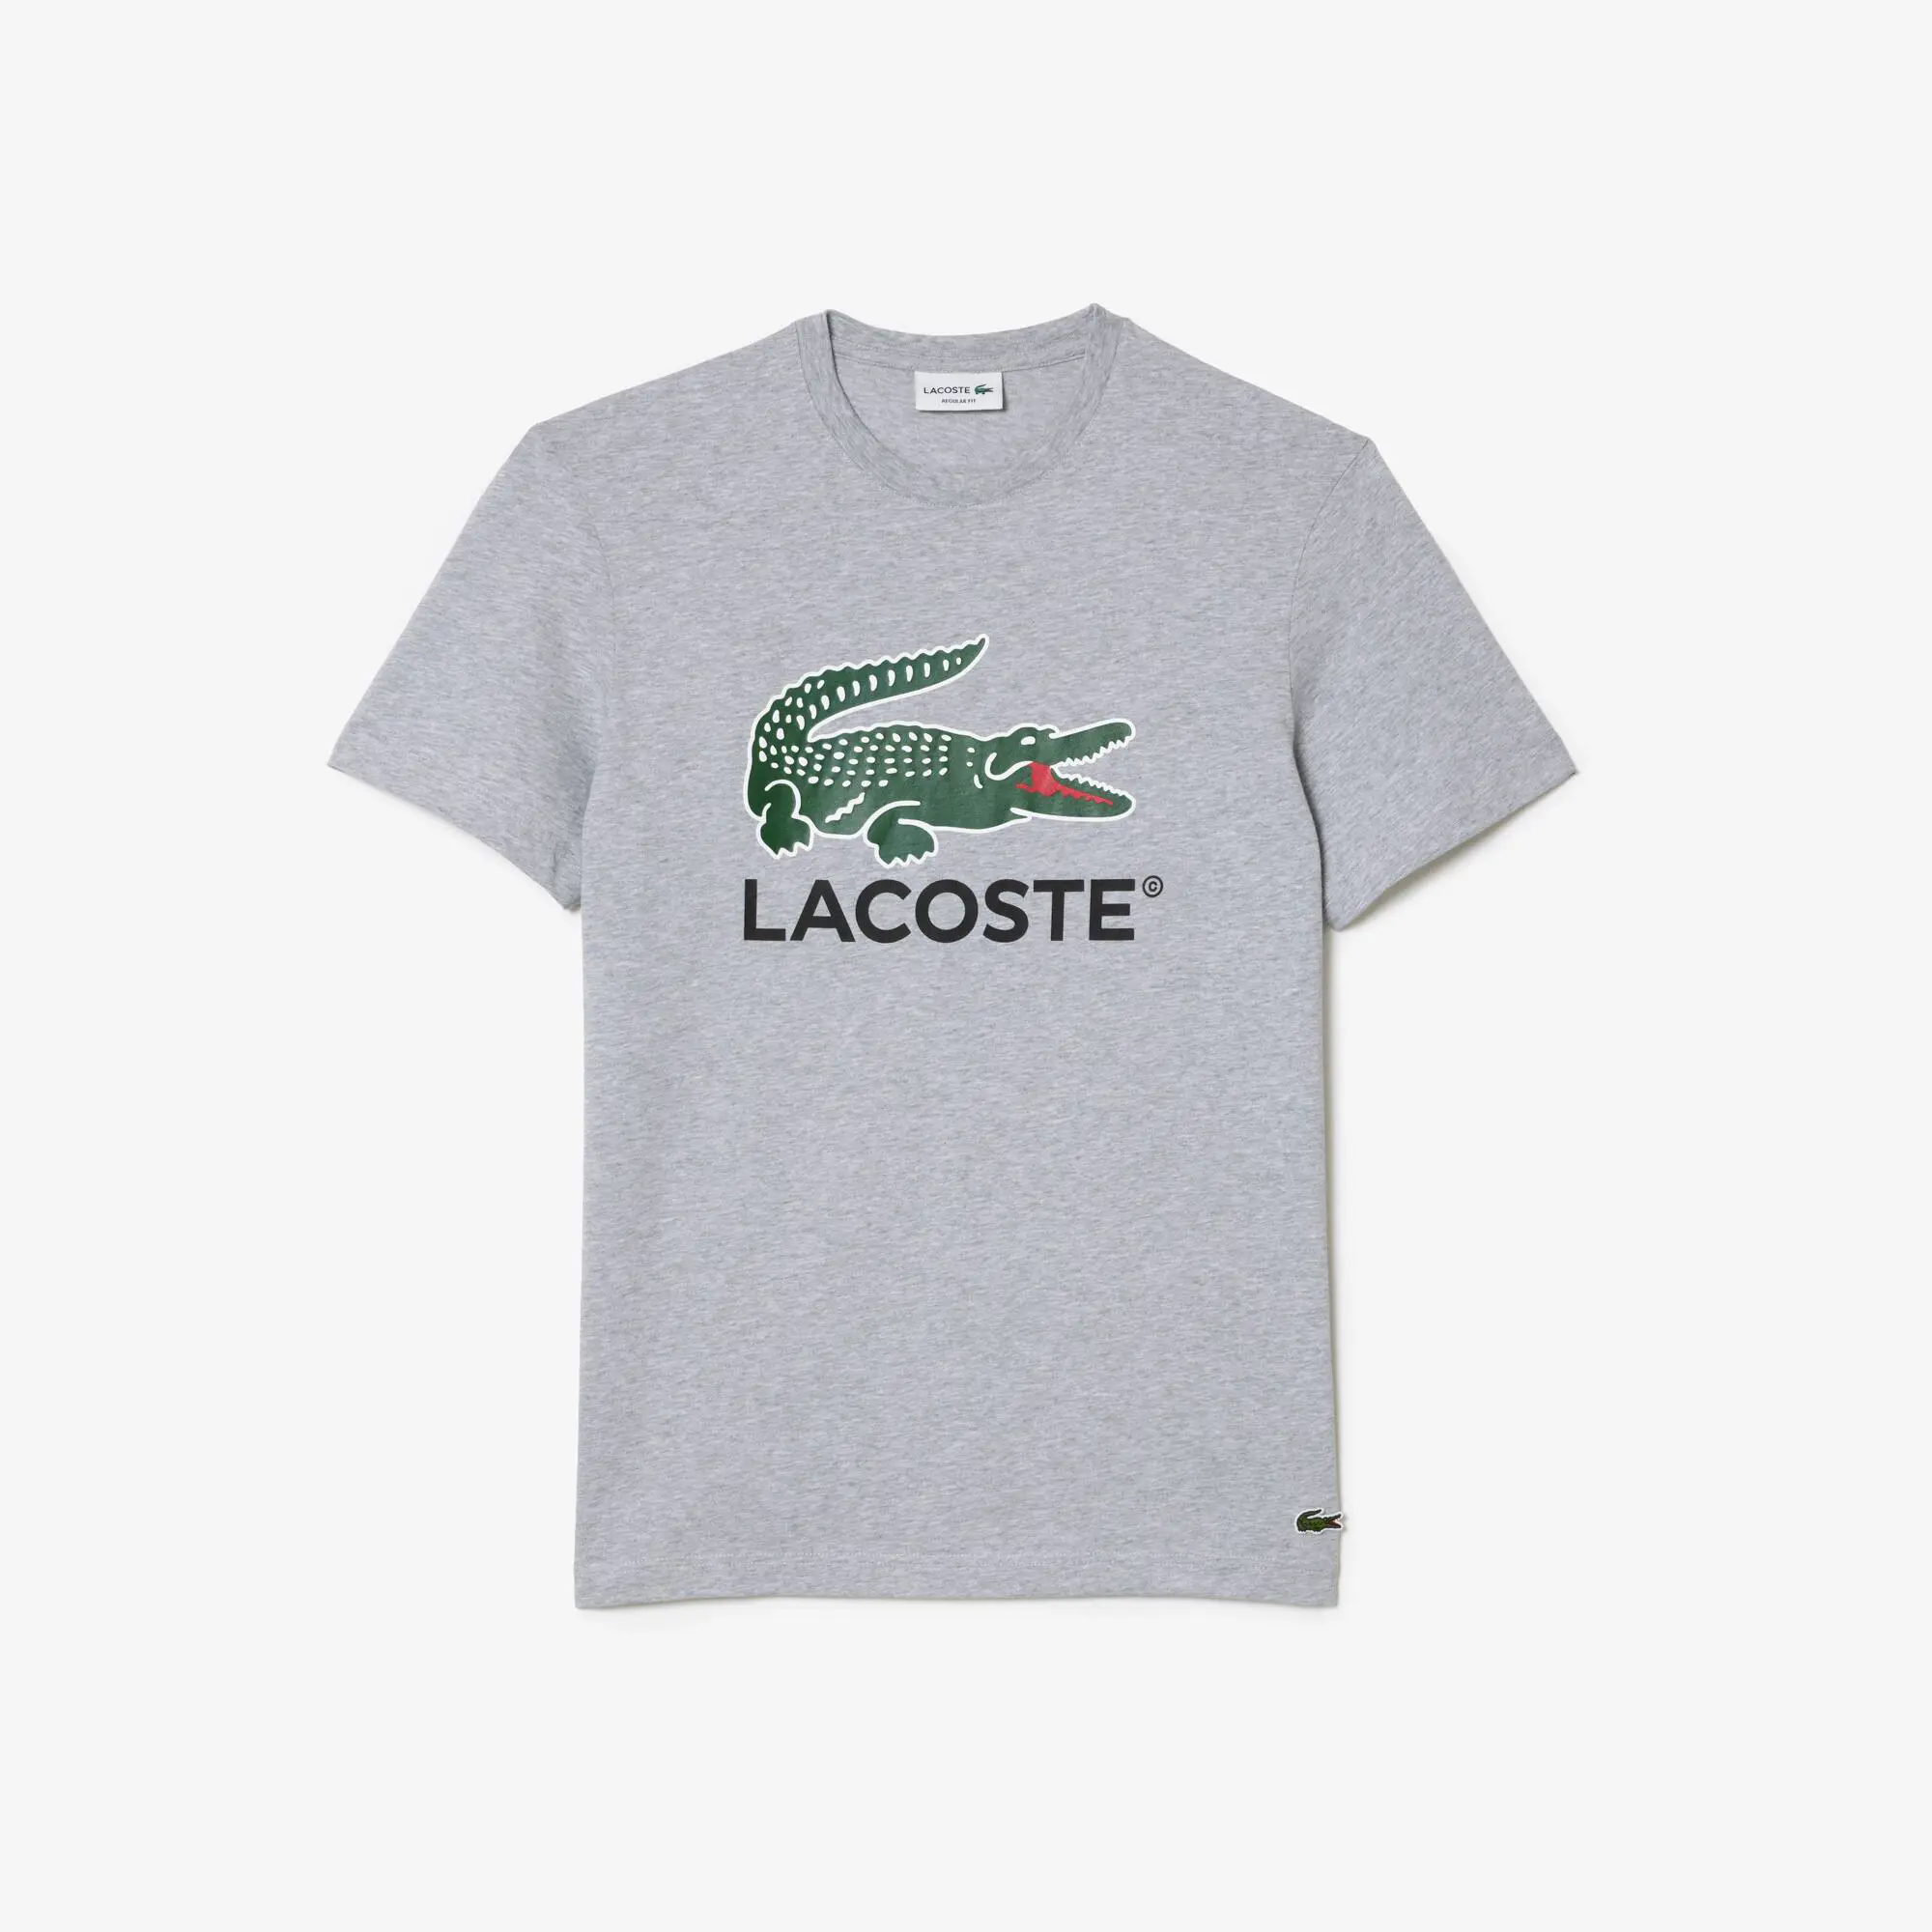 Lacoste Men's Cotton Jersey Signature Print T-Shirt. 2